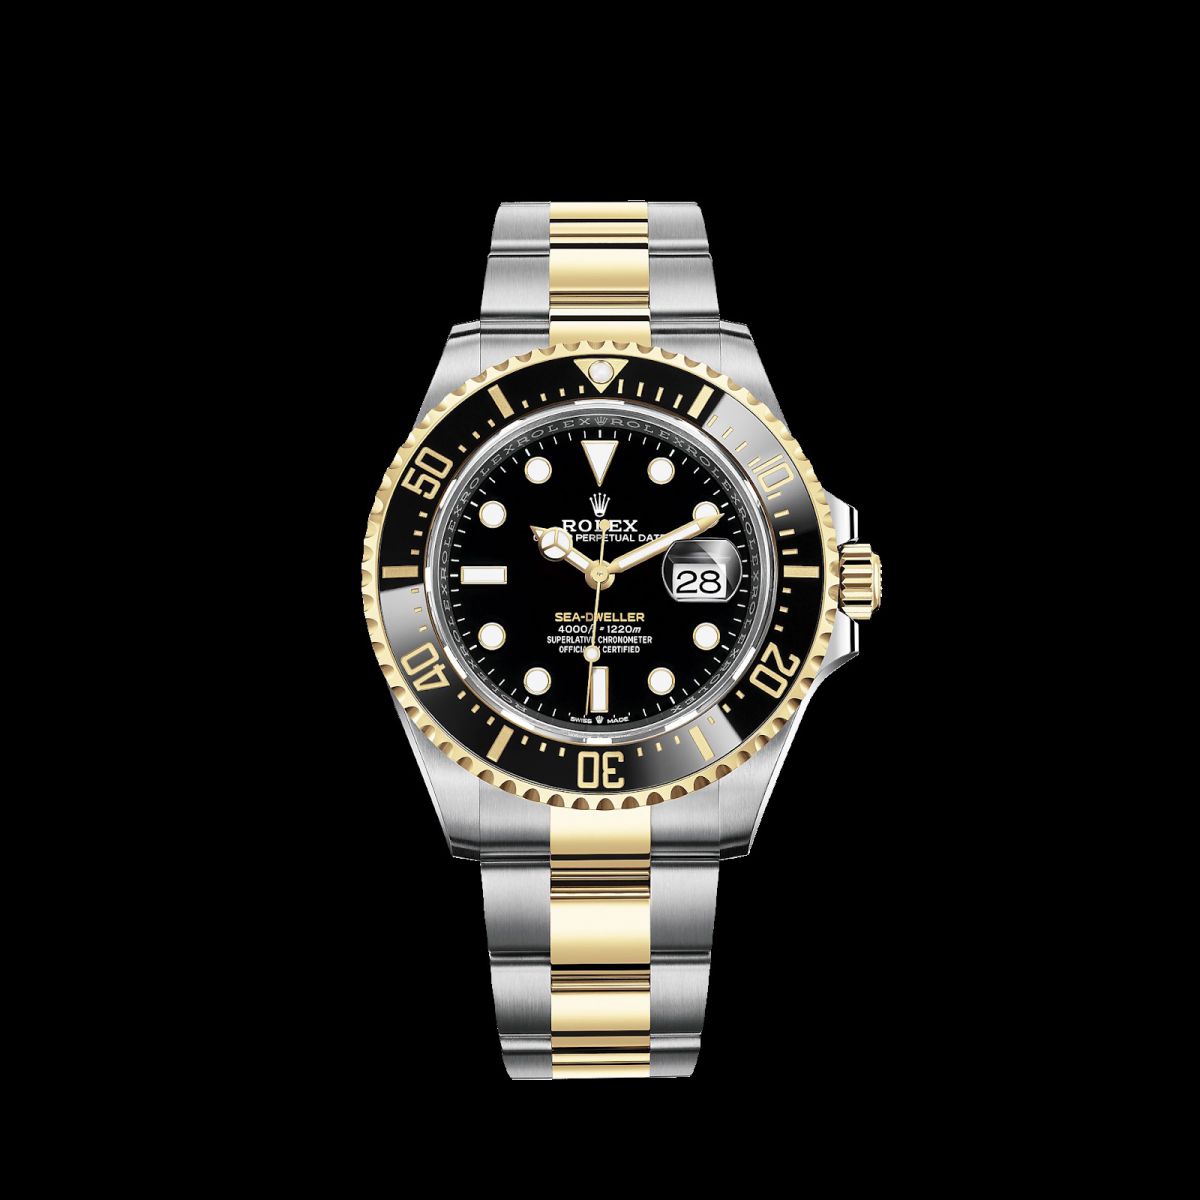 Chiếc đồng hồ sang trọng mang thương hiệu Rolex